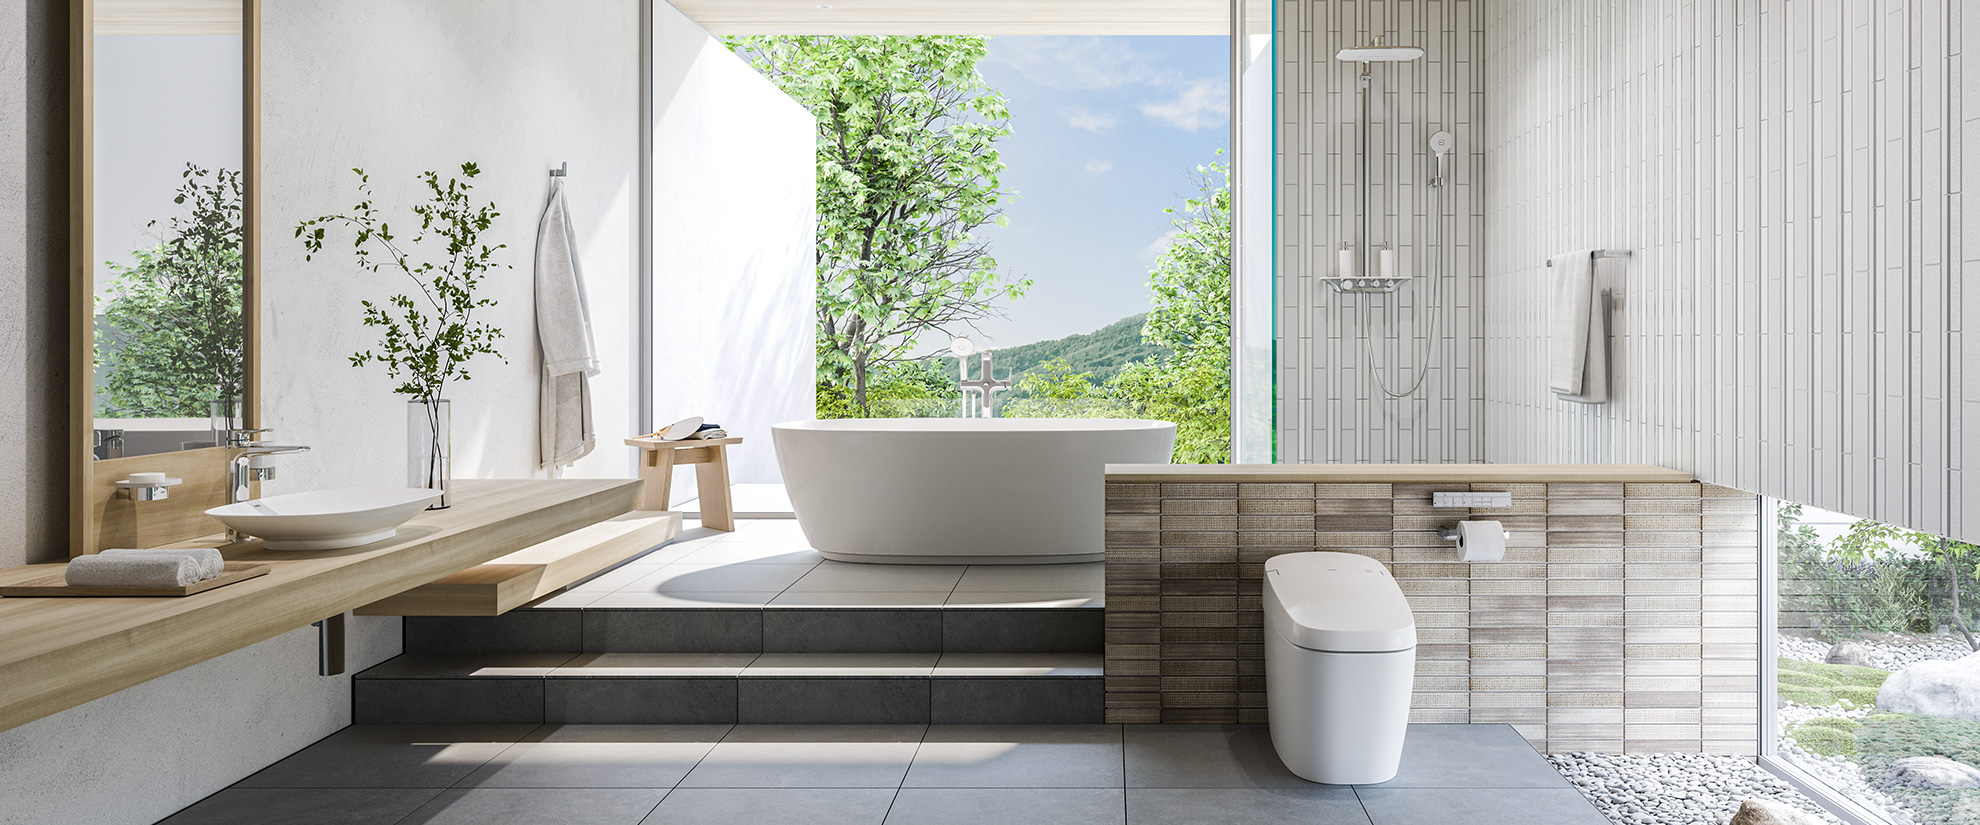 Trọn bộ thiết bị vệ sinh INAX - Bạn đang cần tìm kiếm một bộ sản phẩm vệ sinh hoàn chỉnh dành riêng cho phòng tắm của mình? Hãy đến với thương hiệu Inax - chuyên cung cấp các bộ sản phẩm vệ sinh hoàn chỉnh từ bàn cầu, chậu rửa đến vòi nước và bộ làm mát cho nhà tắm của bạn. Với chất lượng đỉnh cao và thiết kế sang trọng, đây chắc chắn sẽ là sự lựa chọn tốt nhất.